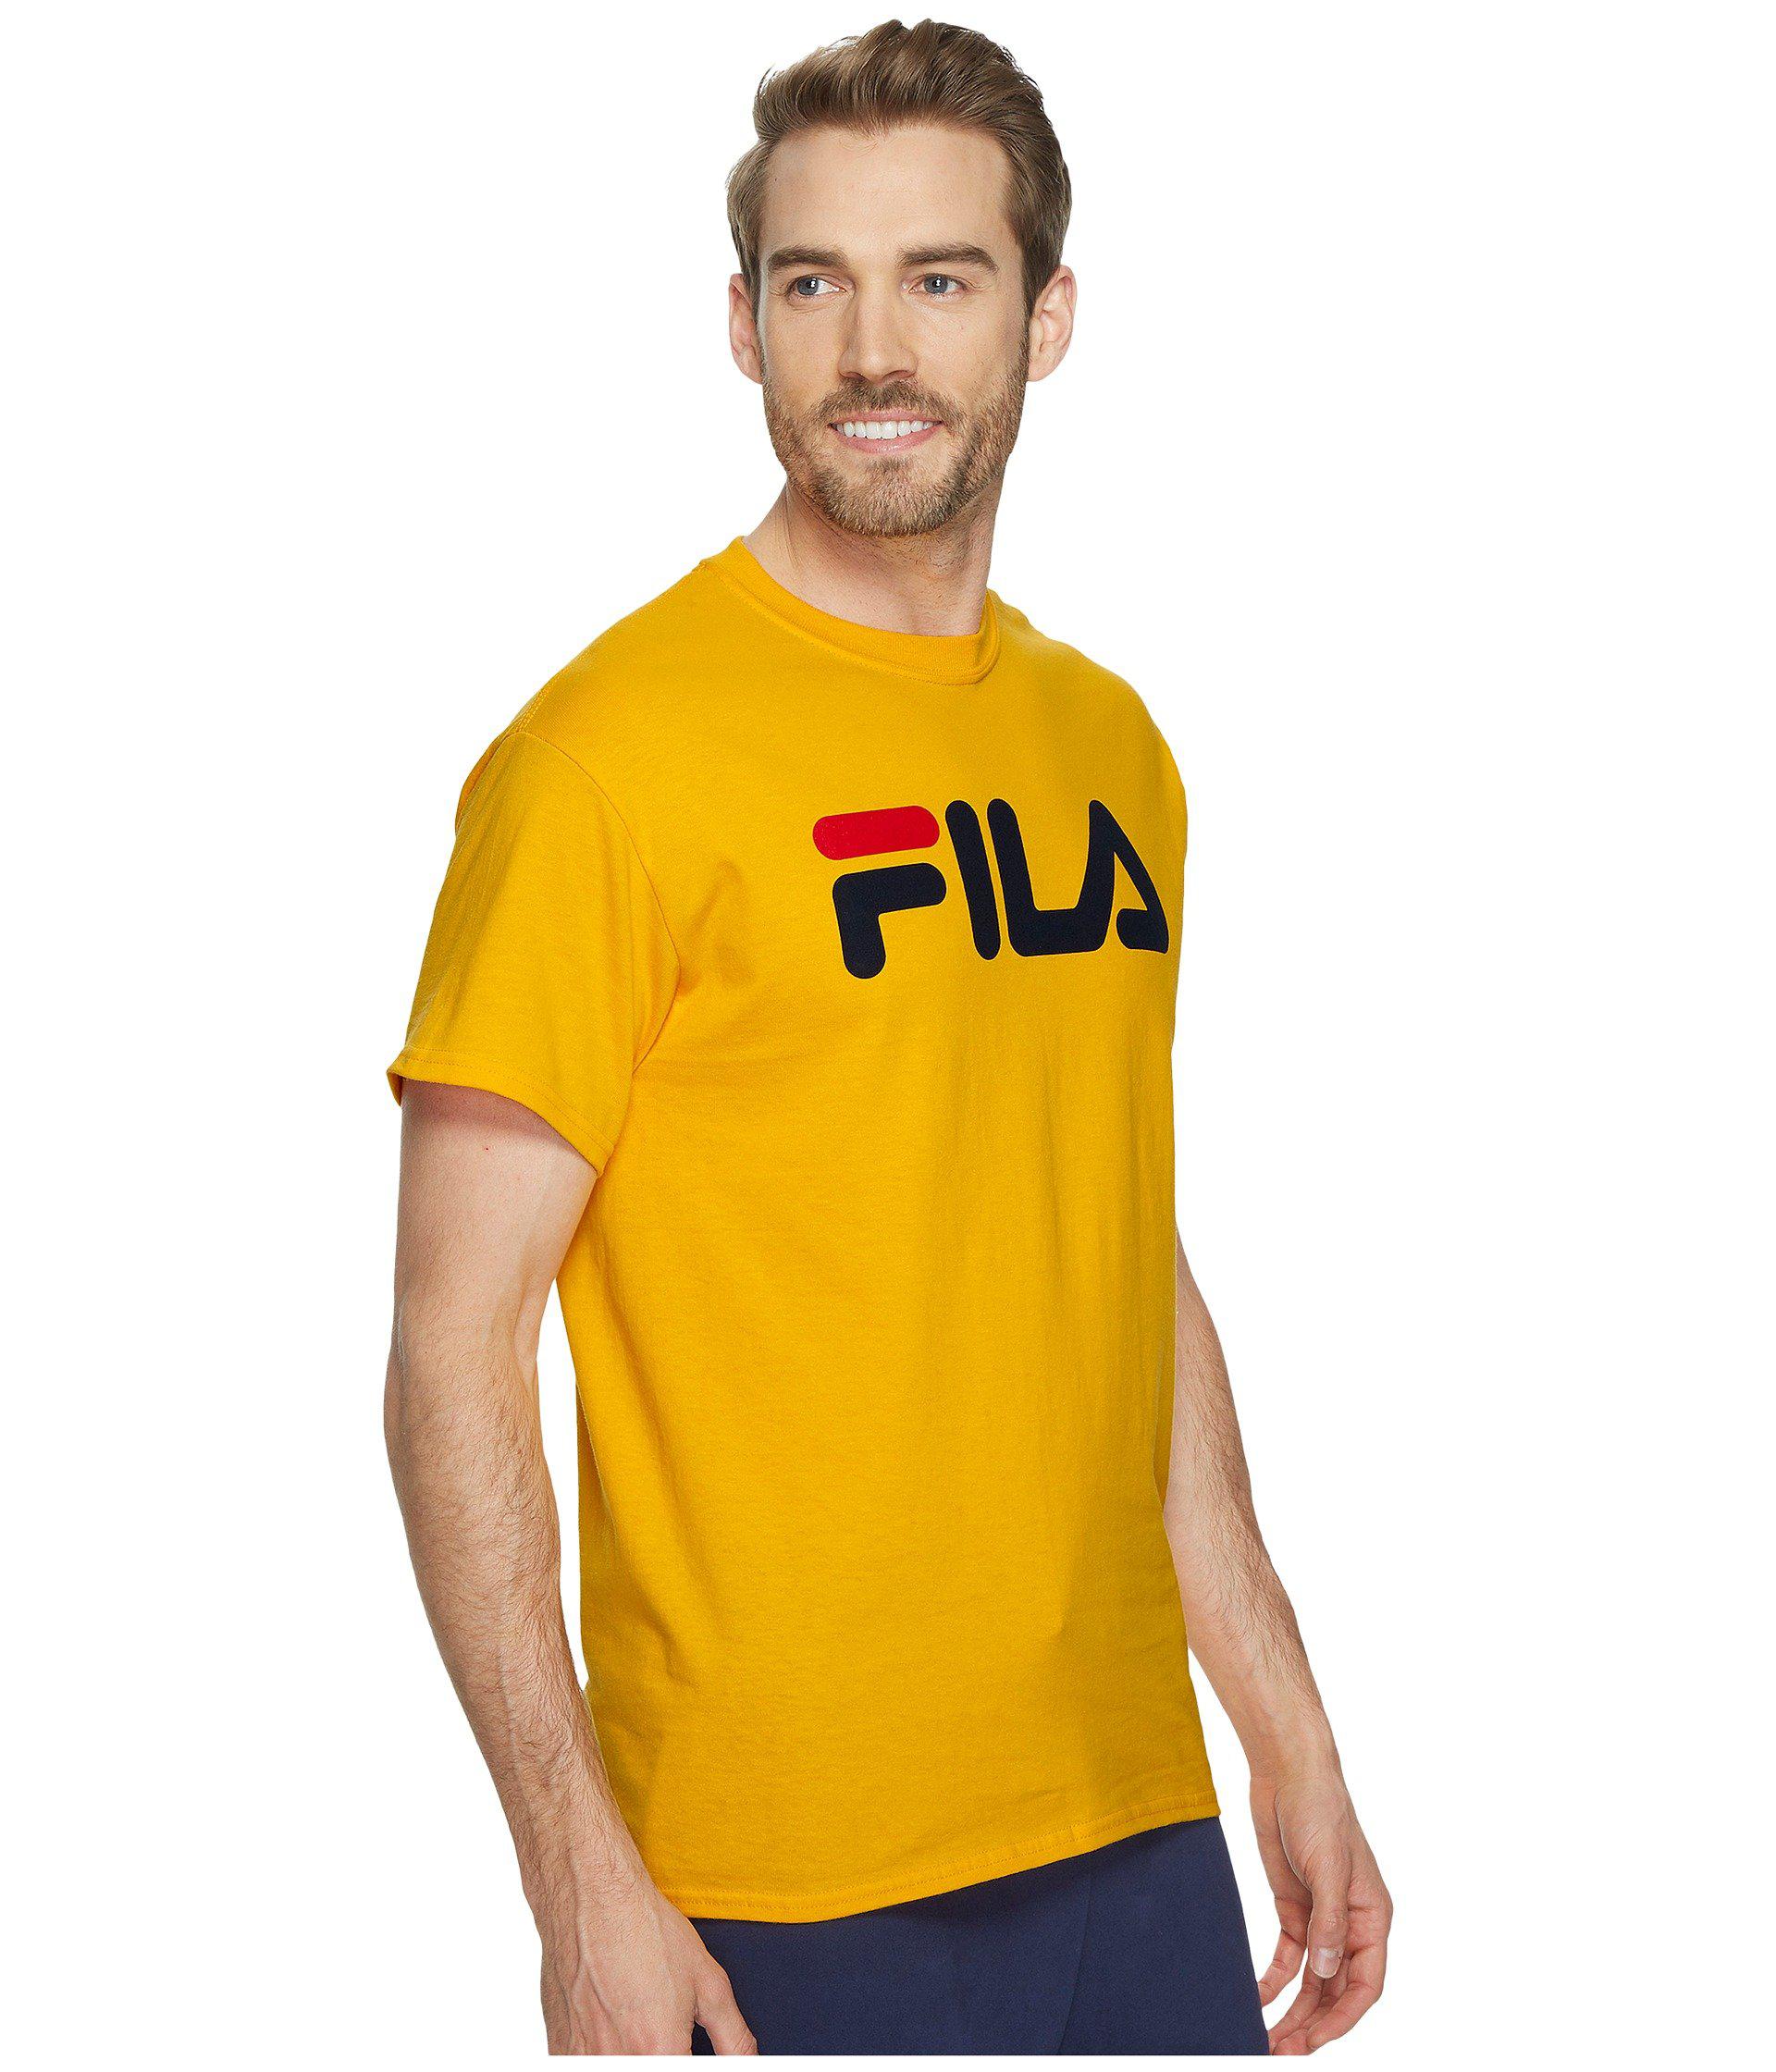 Buy > fila black t shirt > in stock